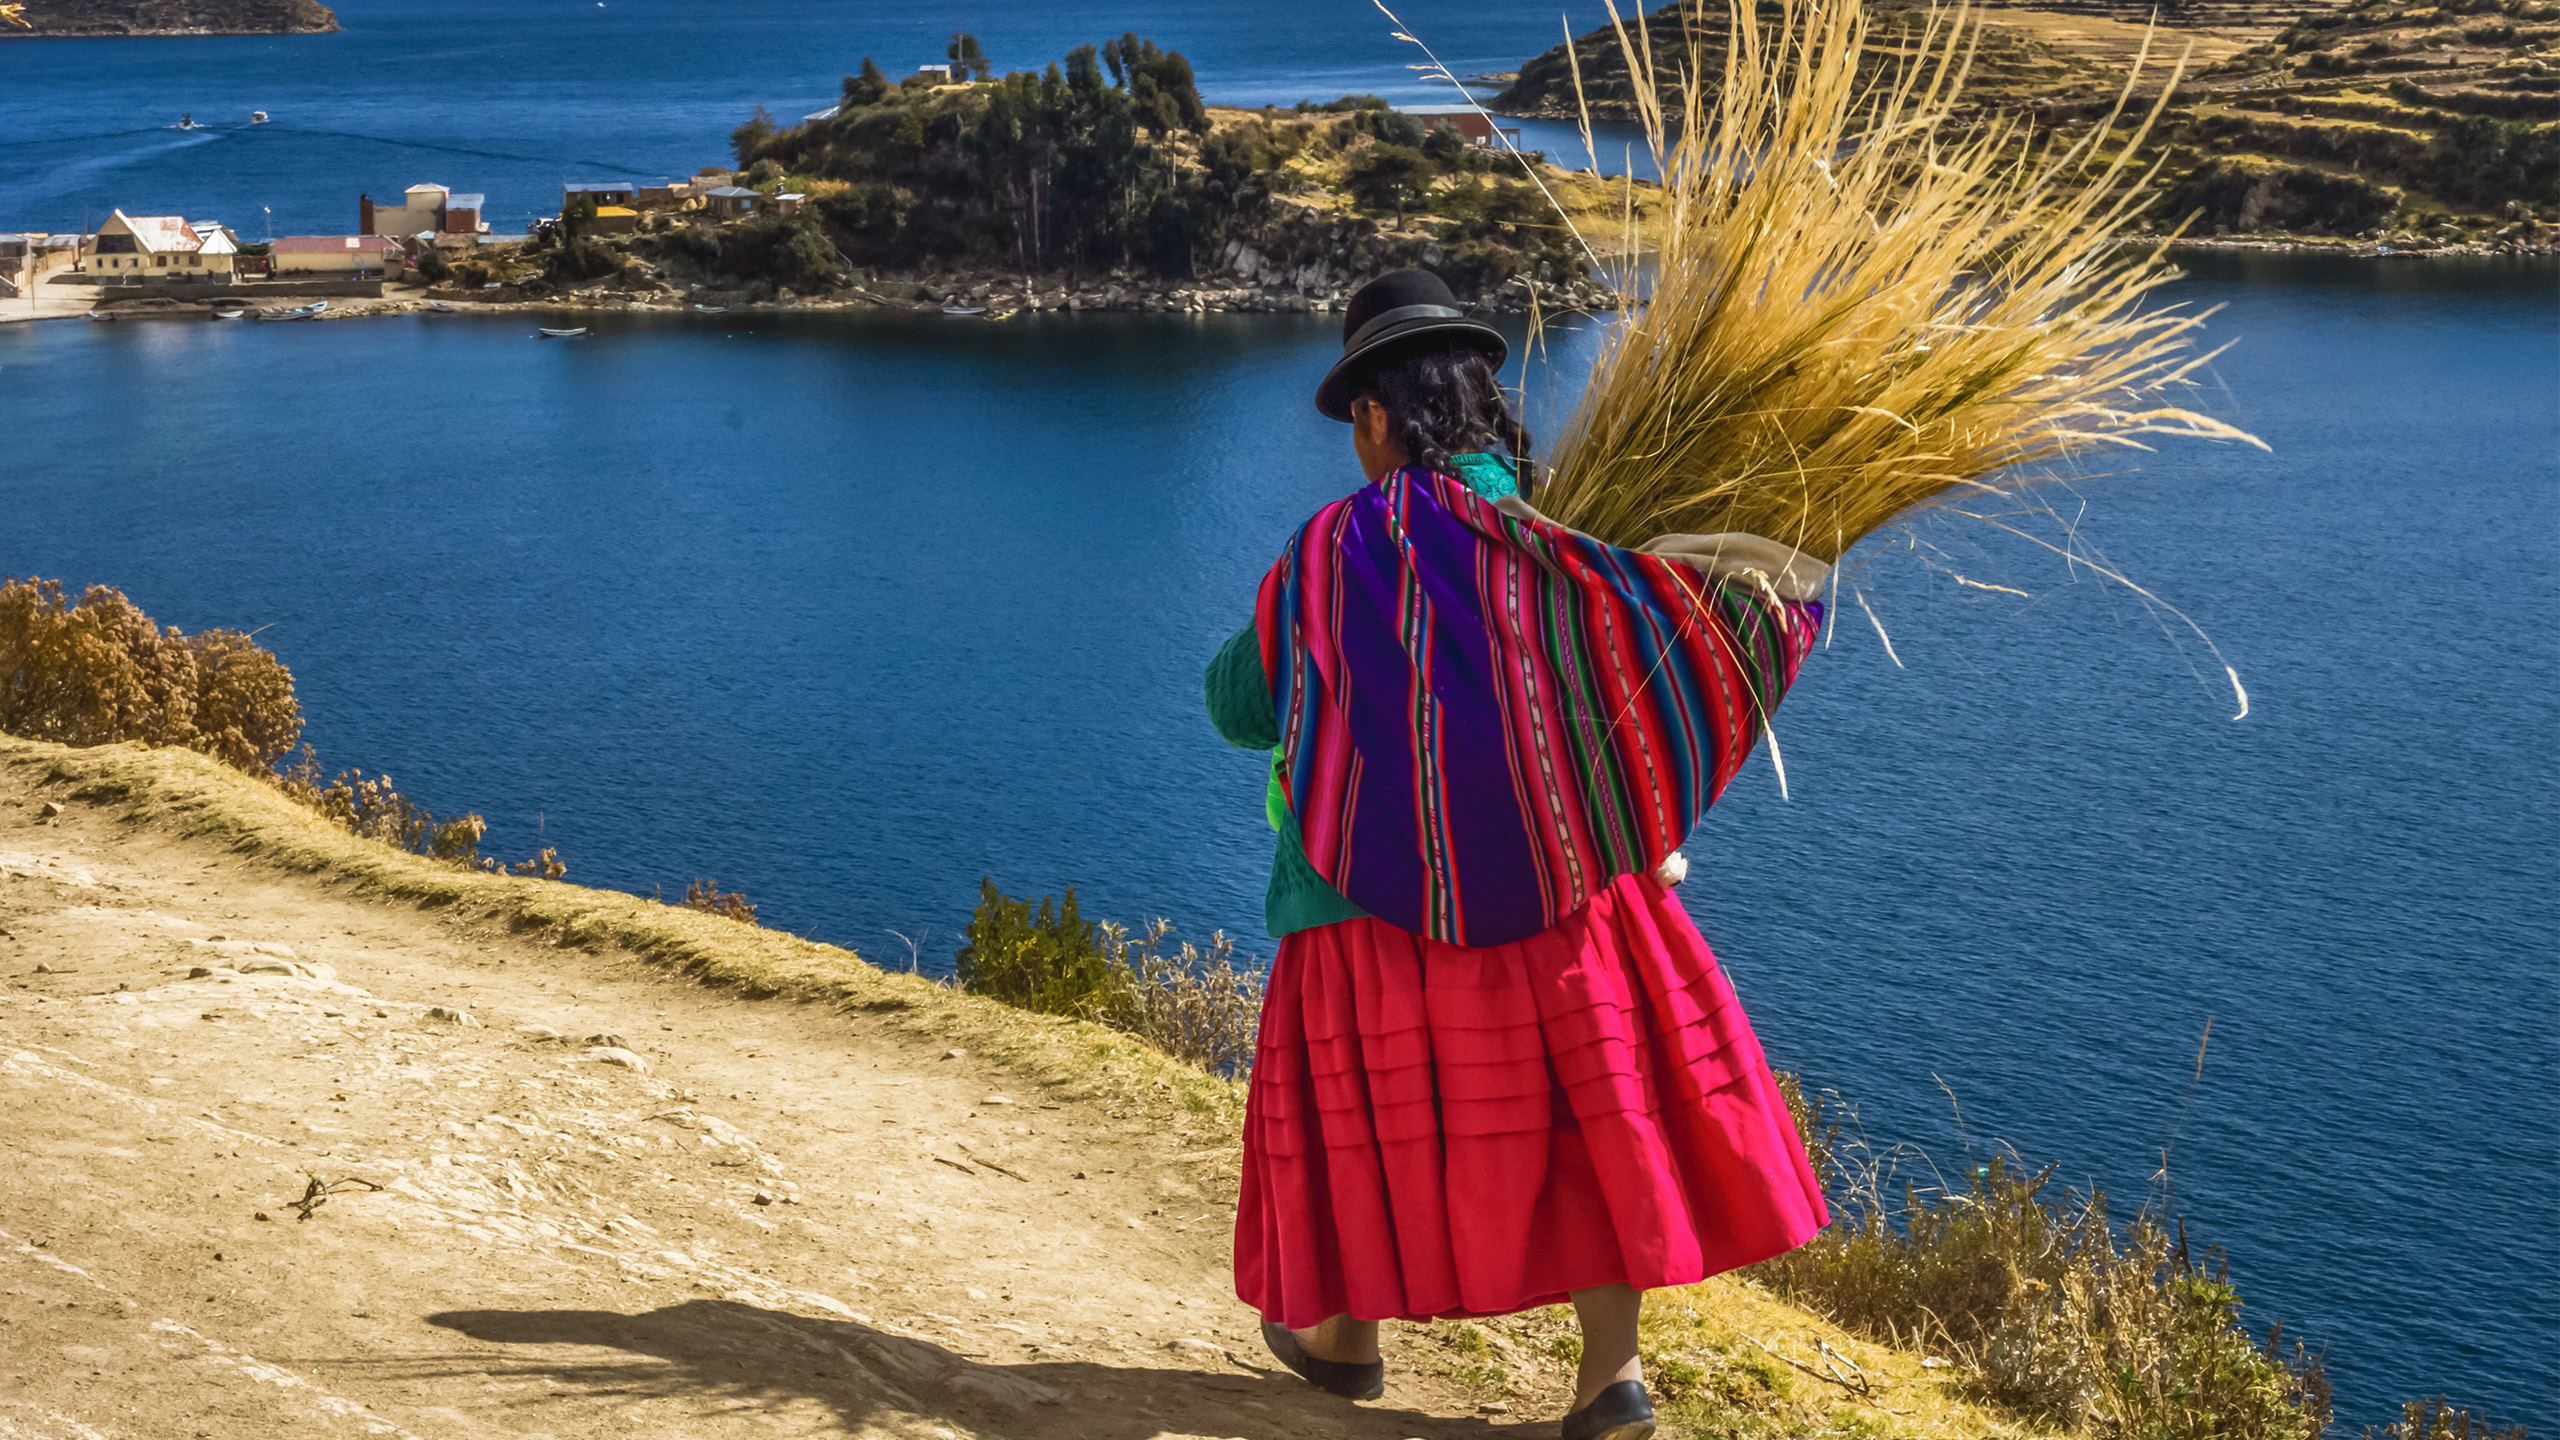 Bolivianisches Altiplano aus dem Reiseprospekt: Indígena auf der Sonneninsel im Titicaca-See mit einem Büschel des berühmten Totora-Schilfs. | NiarKrad, Shutterstock